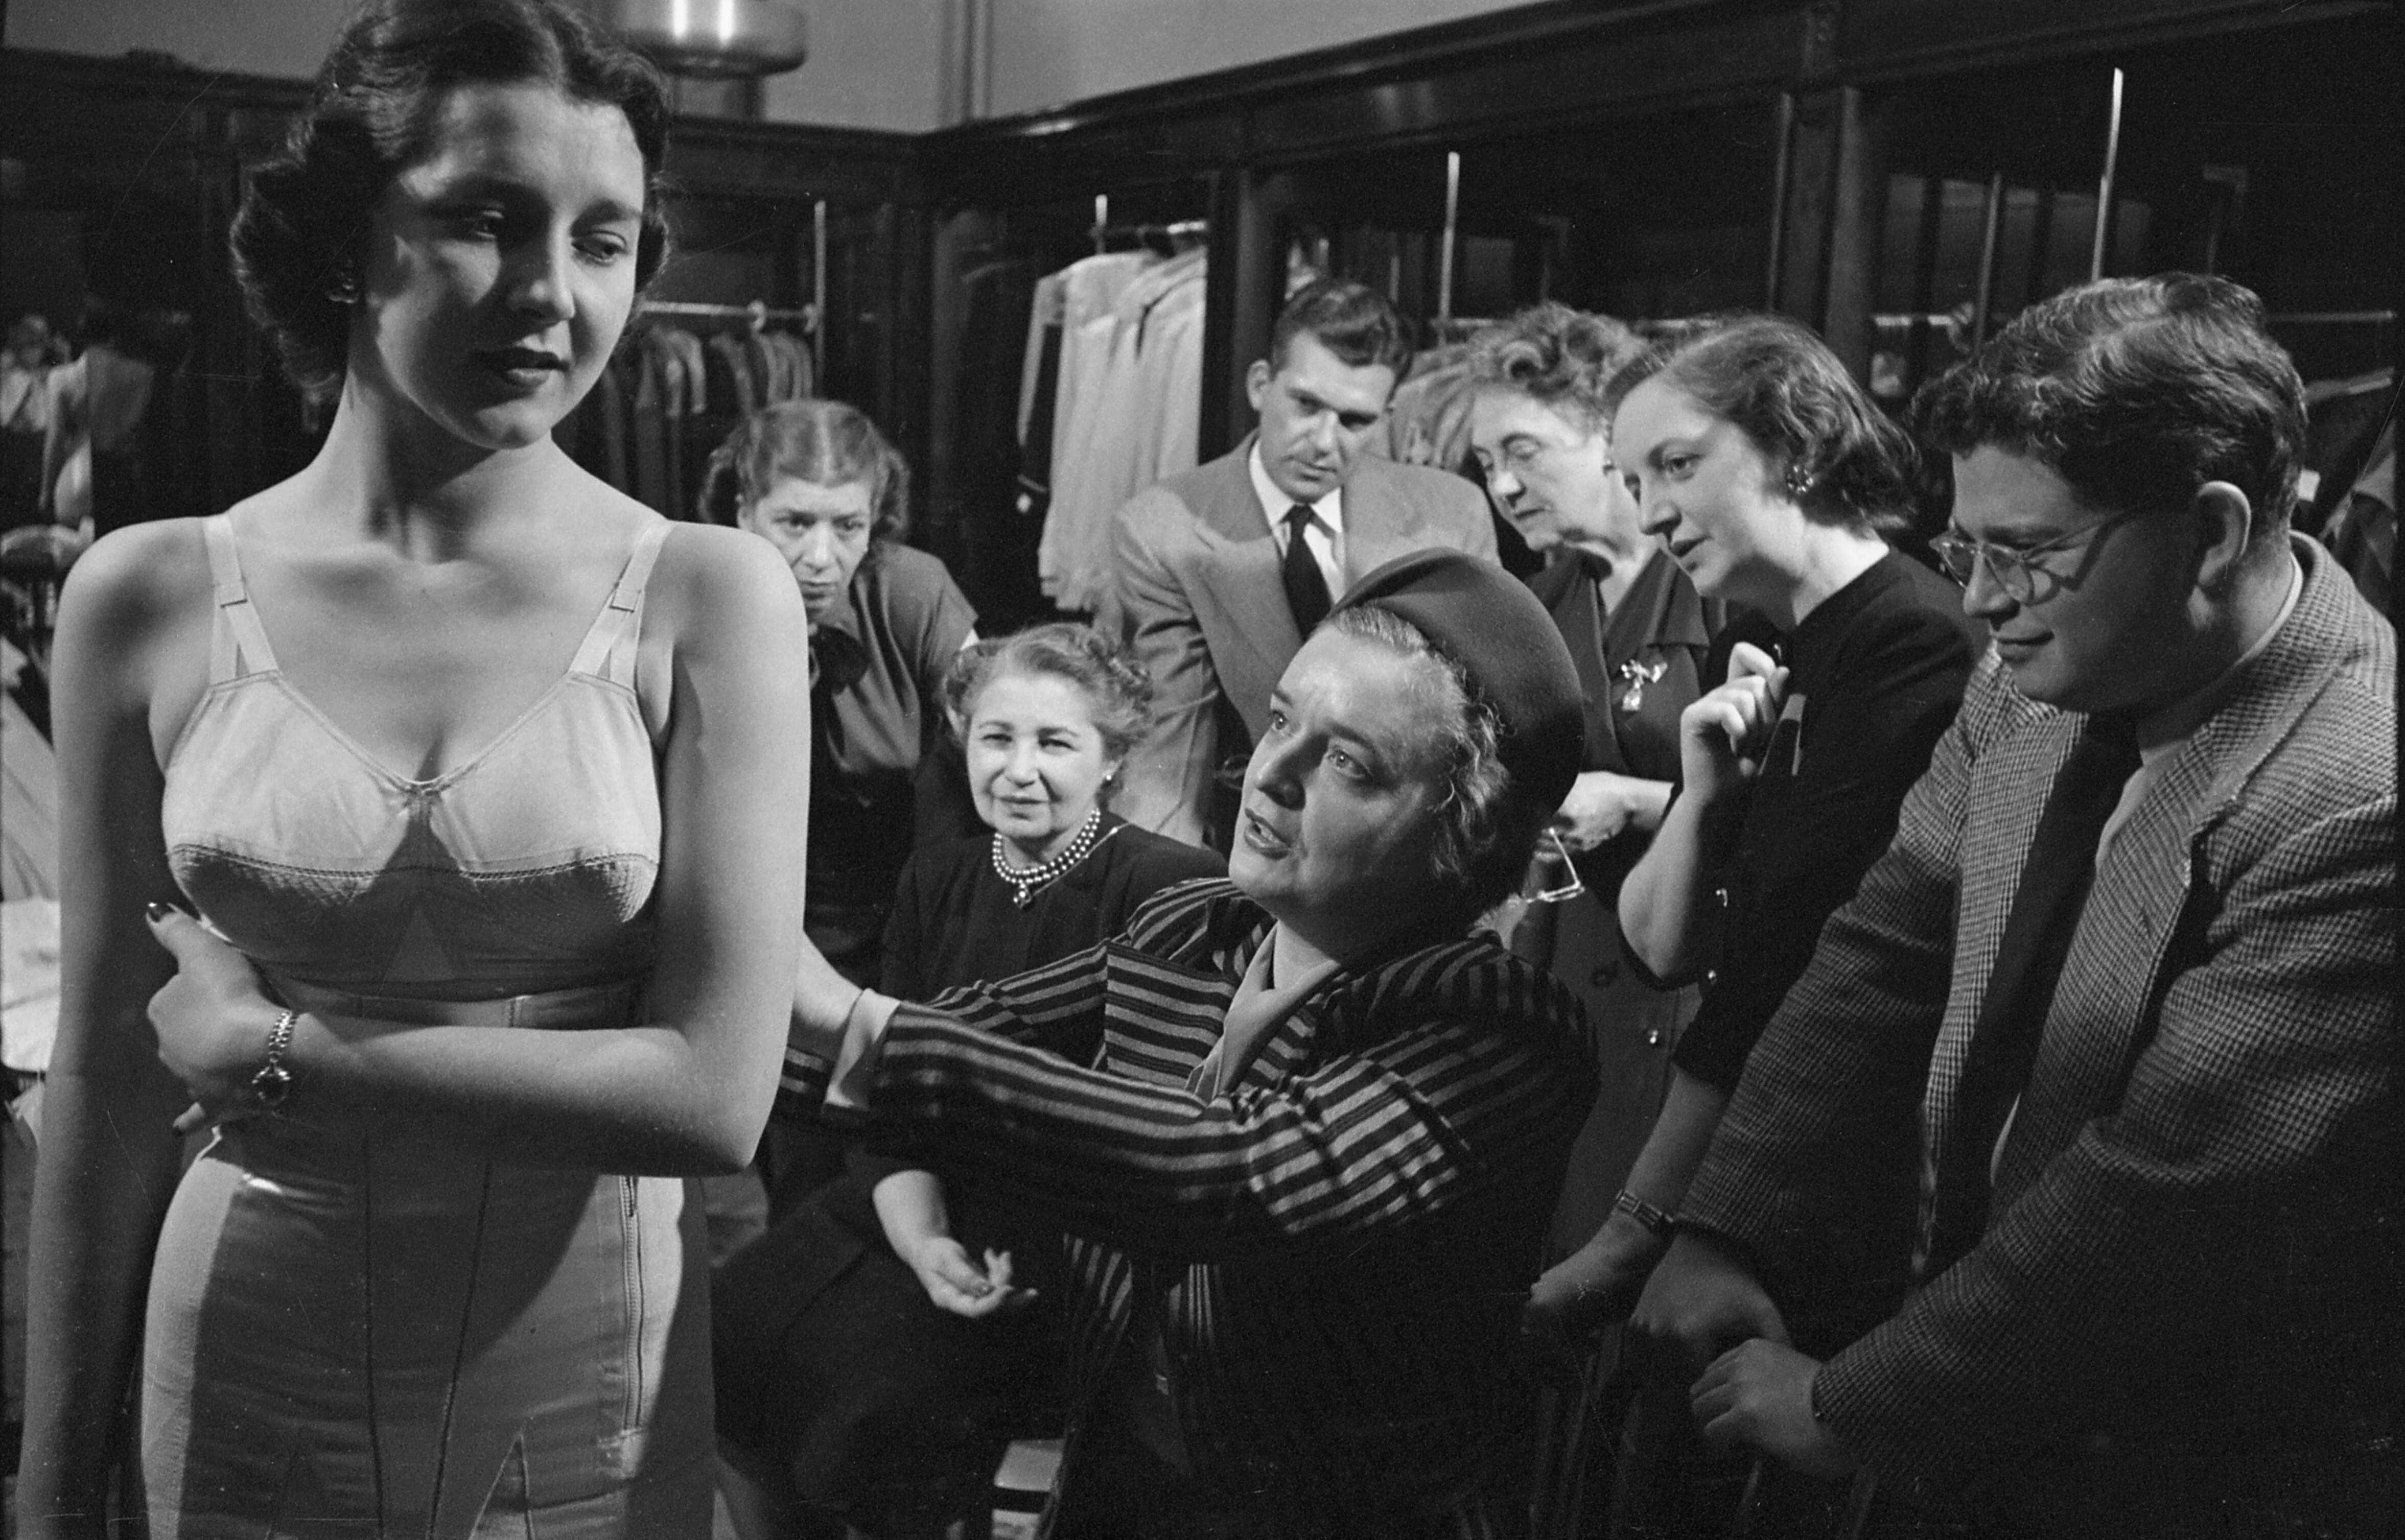 Манекенщица в белье, 1949. Фотограф Стэнли Кубрик